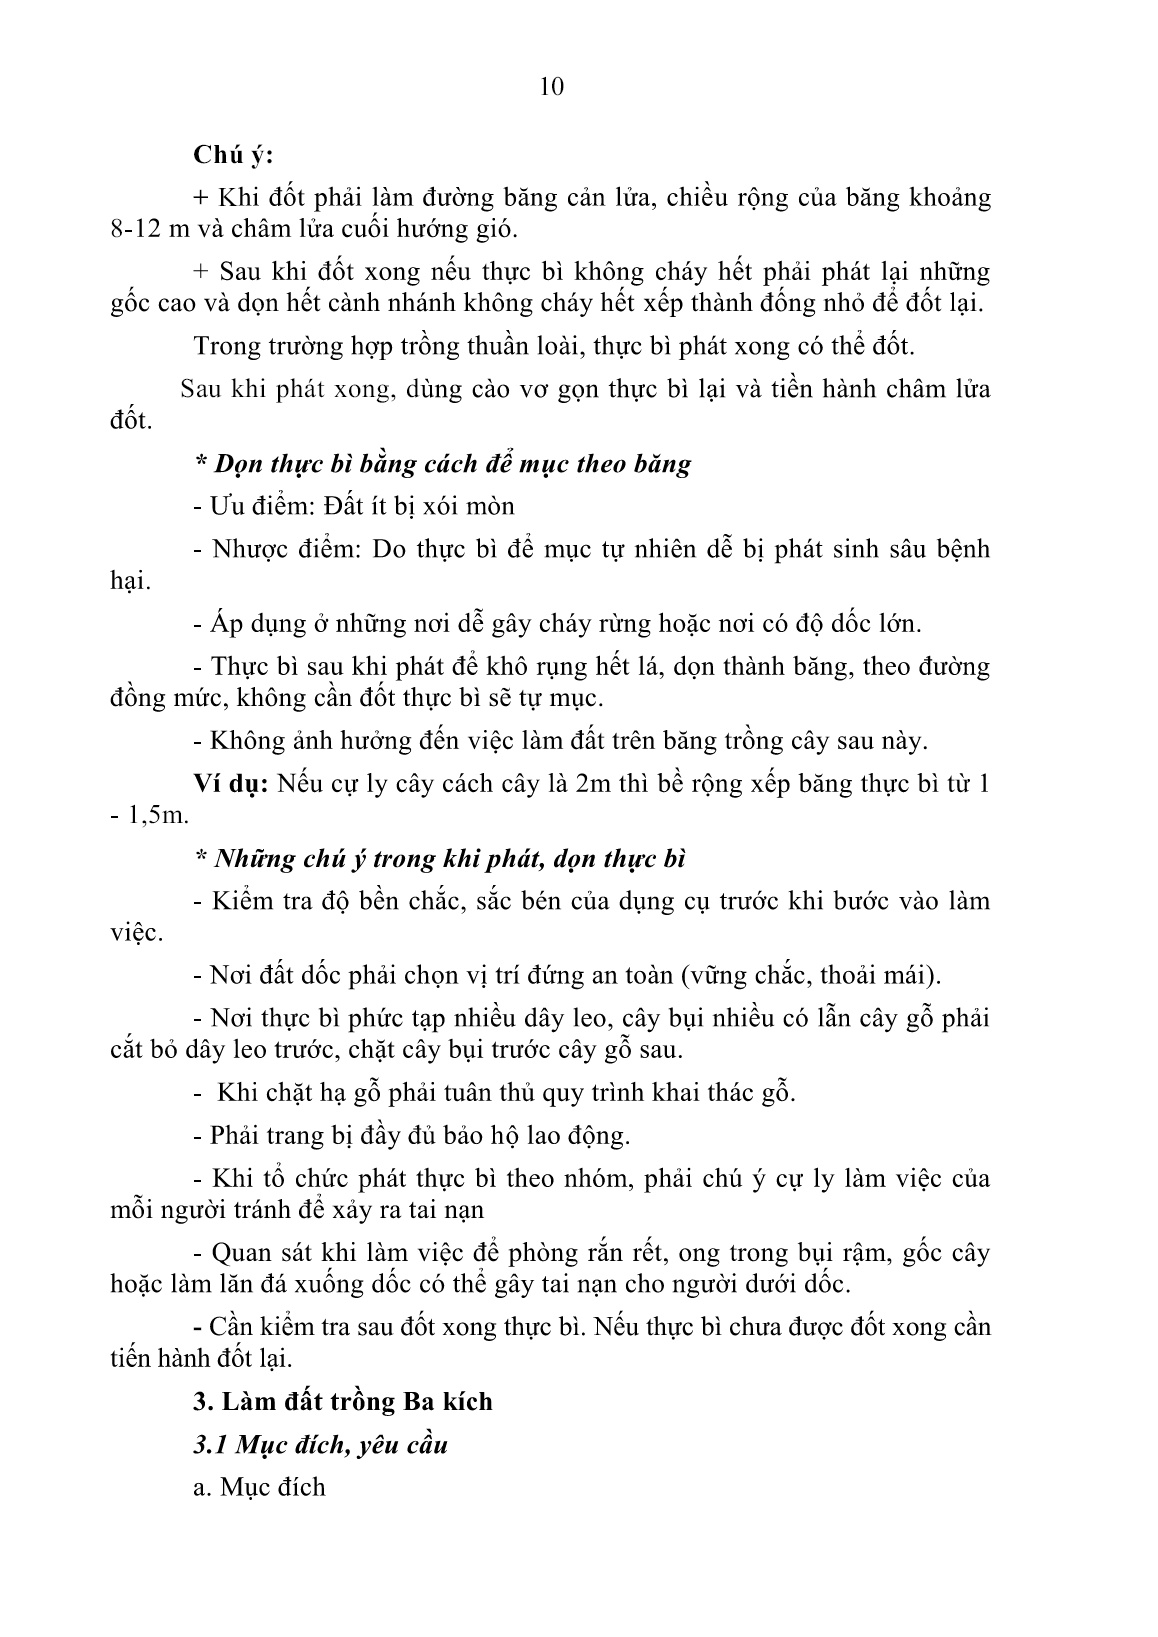 Giáo trình Trồng và thu hoạch ba kích, sa nhân (Trình độ: Cao đẳng, Trung cấp) trang 10